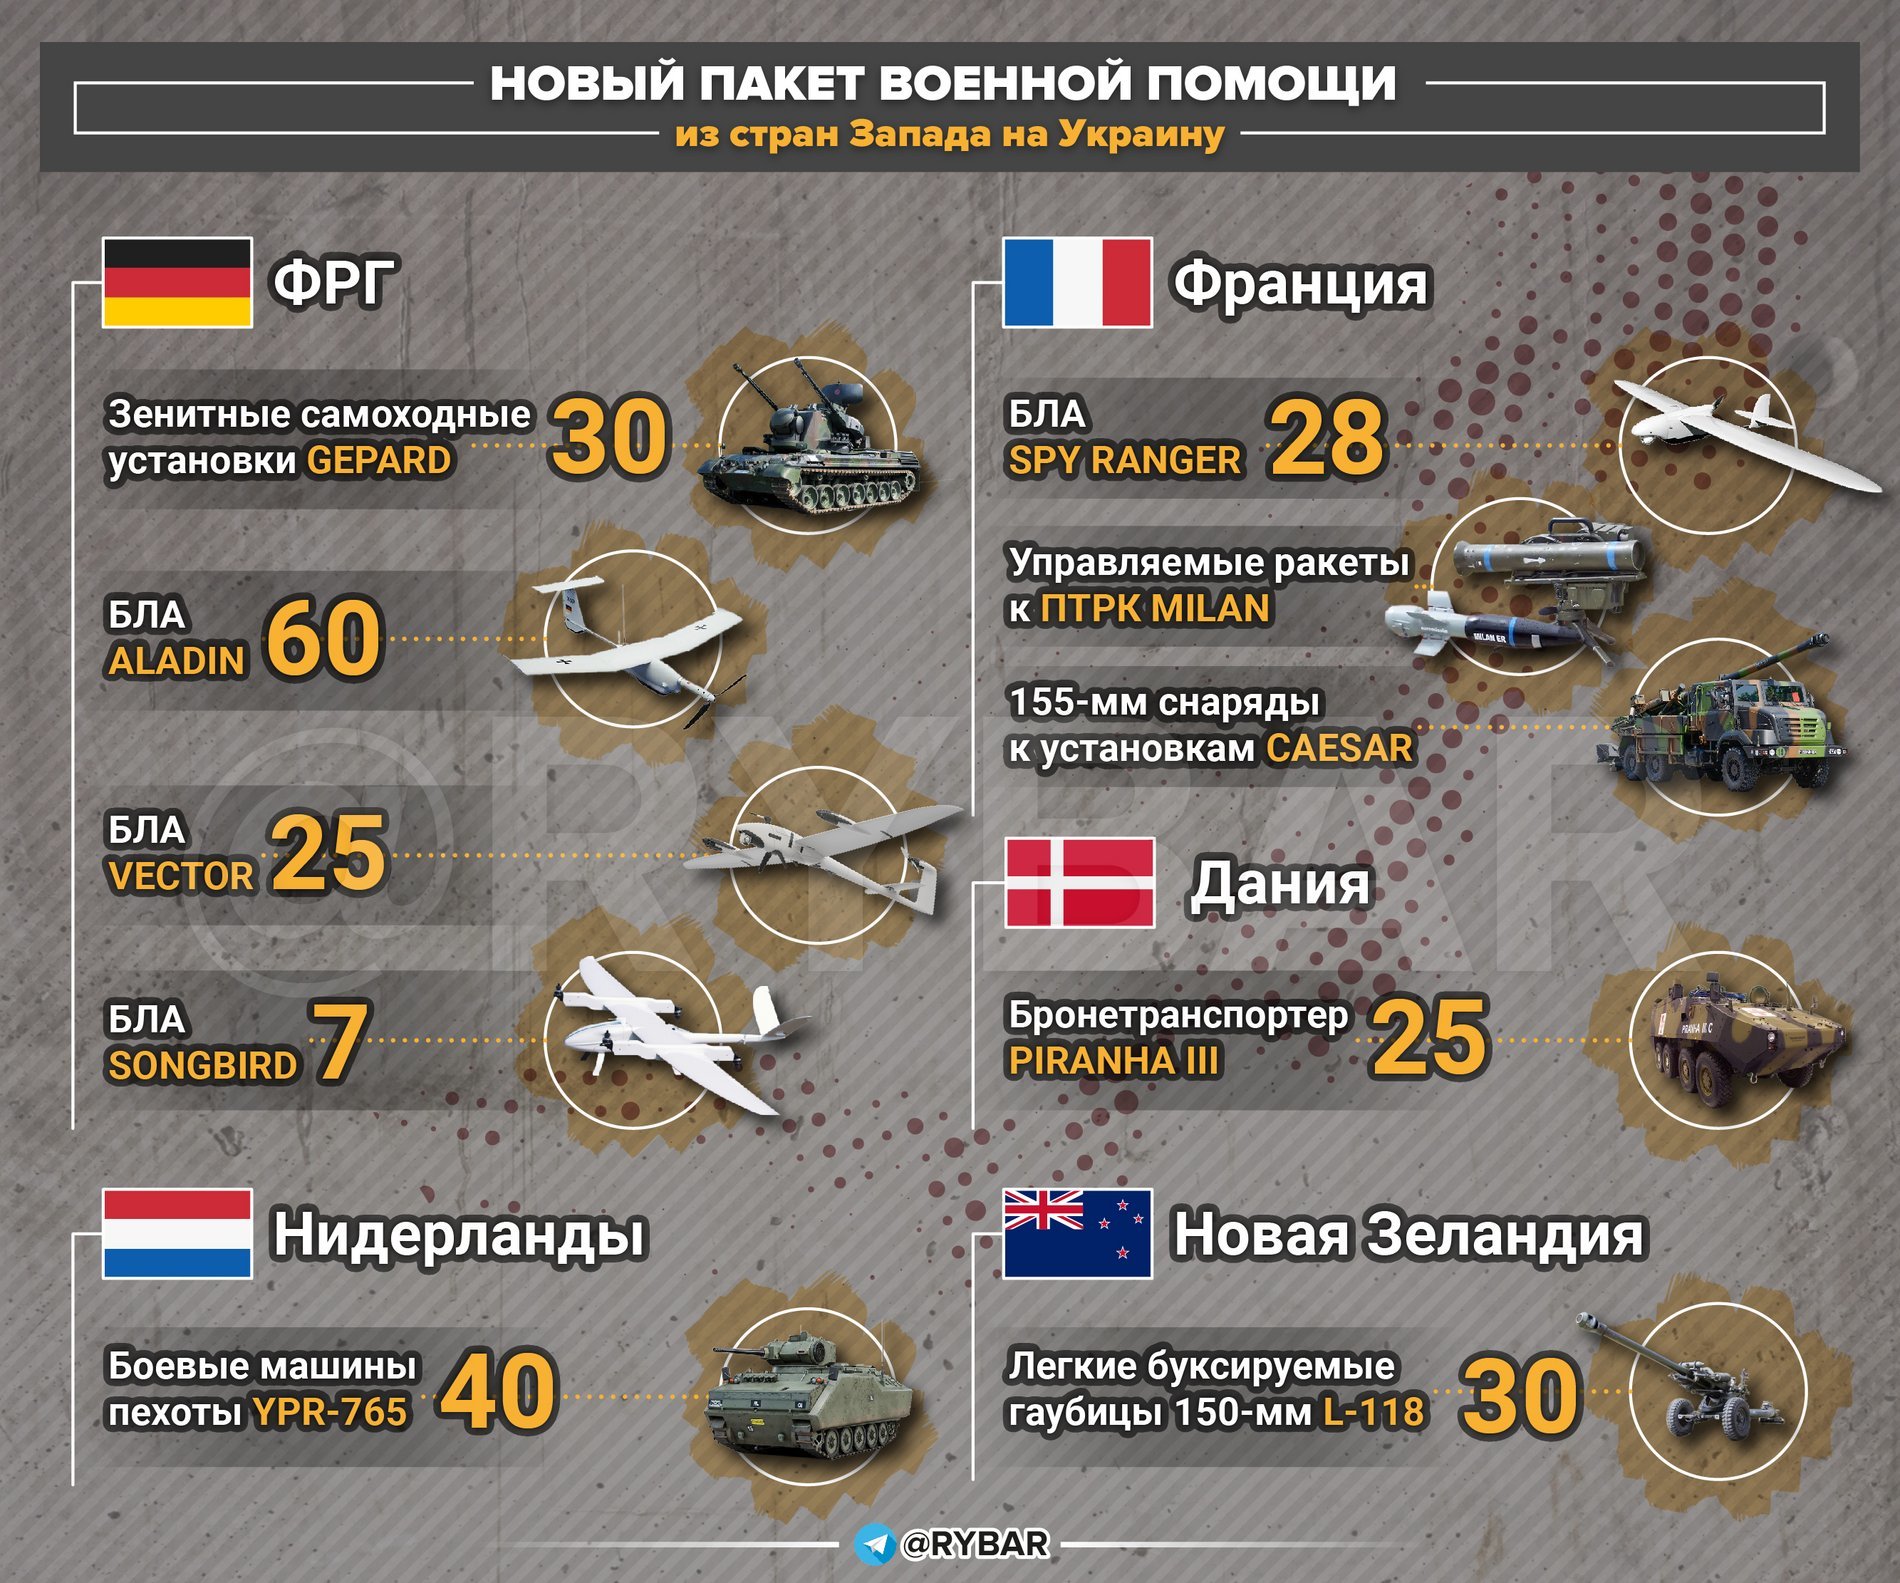 Запад передал украину. Западные поставки оружия на Украину. Поставки Западного вооружения на Украину. Поставки оружия на Украину инфографика. Поставки тяжелого вооружения на Украину.